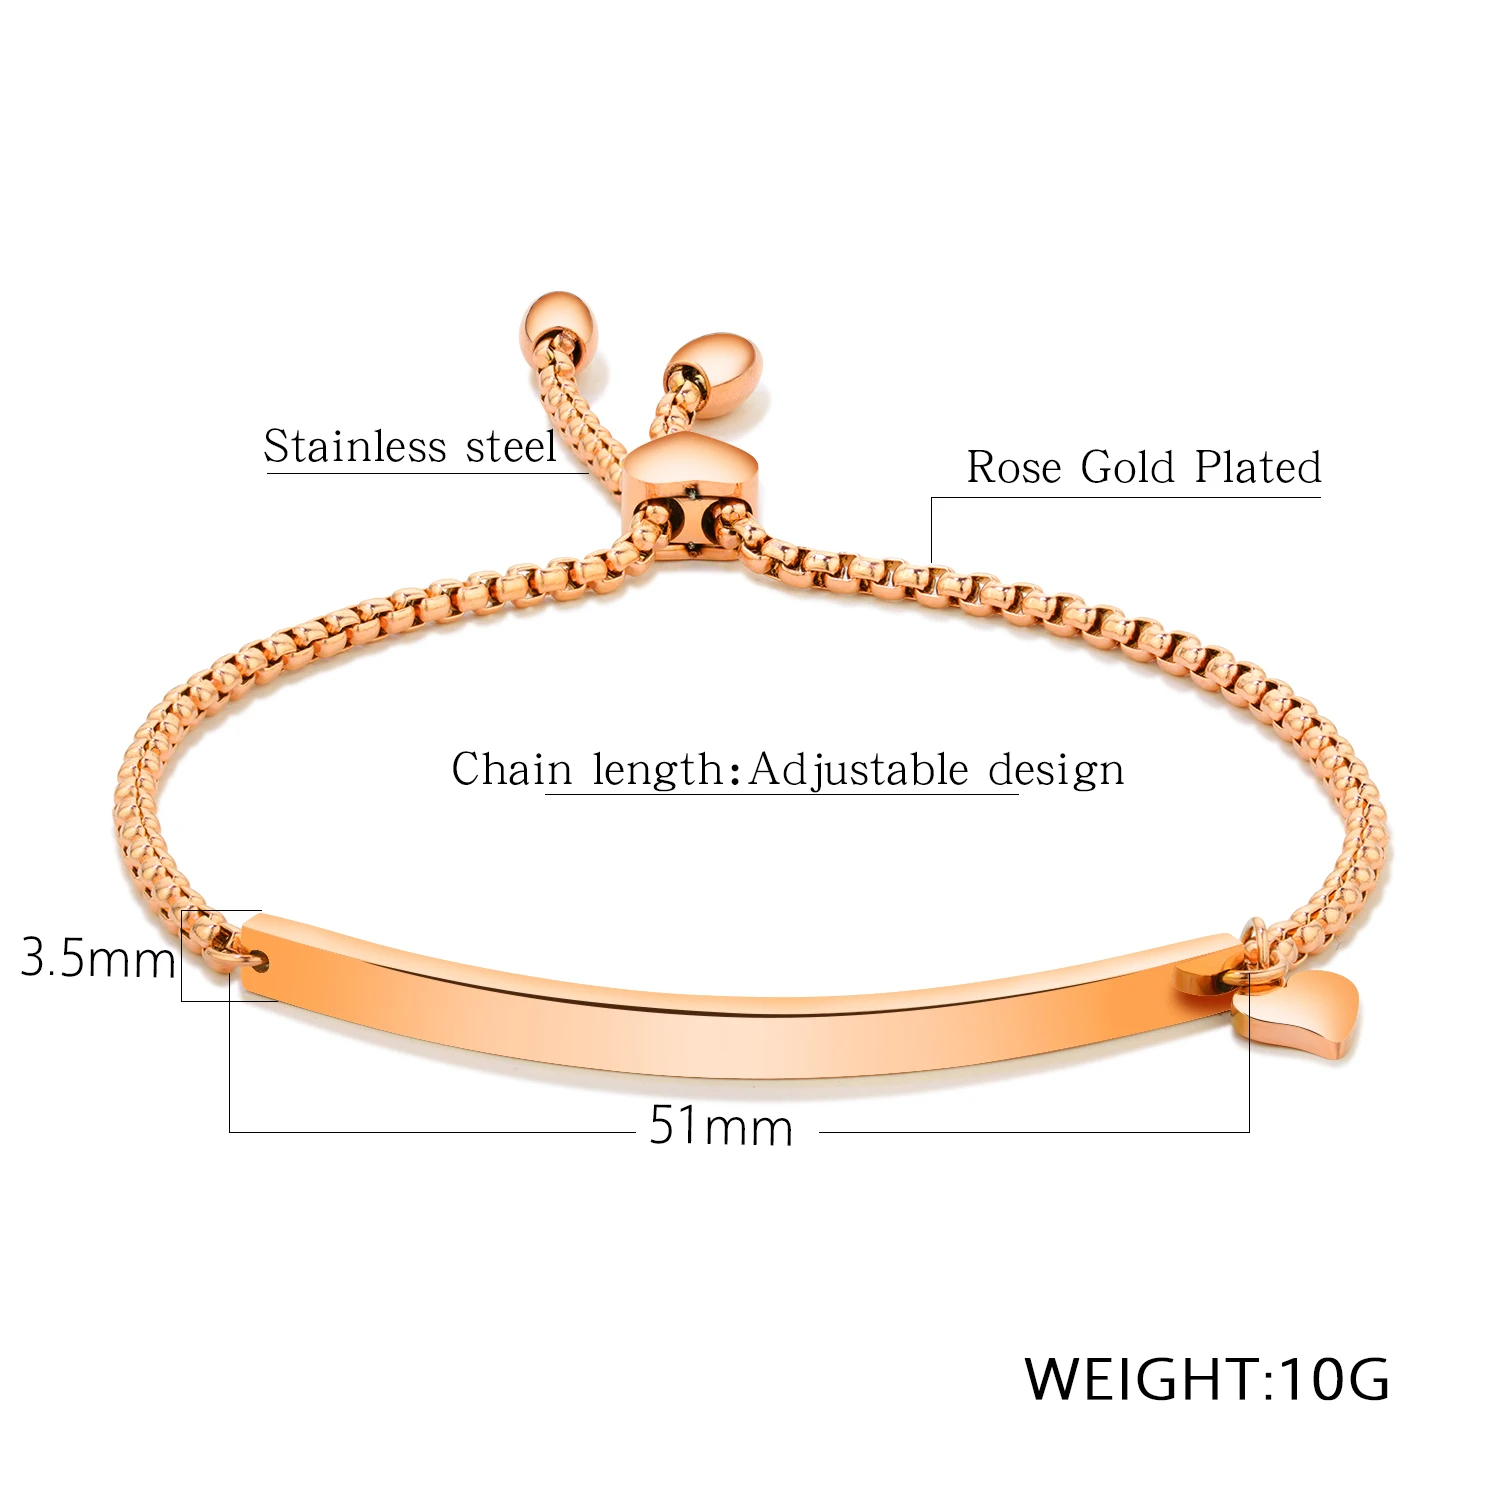 FATE LOVE Простые Модные ювелирные изделия красивые регулируемые для девушек женские ID серебряные браслеты-обручи цвета розового золота GS929